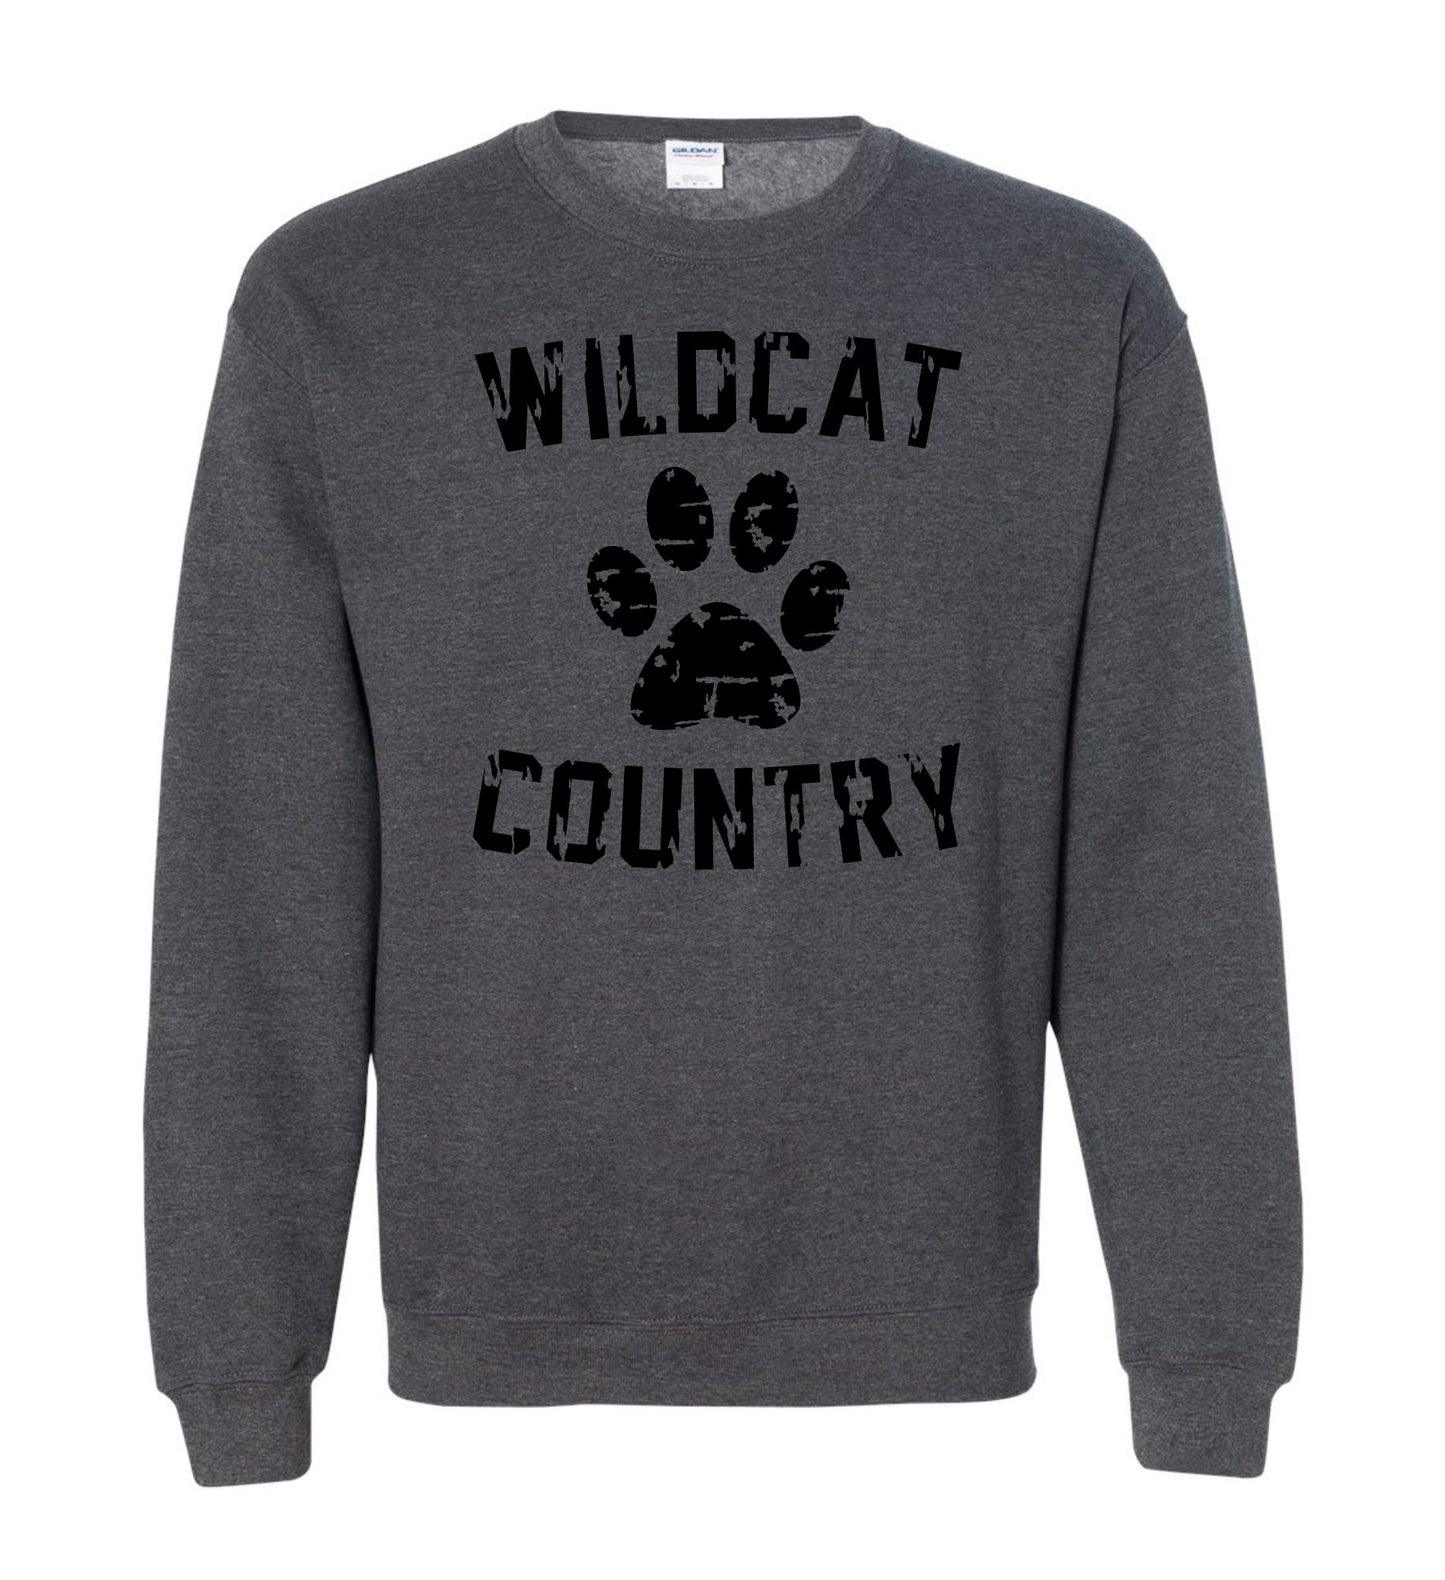 Galva Wildcats - Wildcat Country - Gildan Brand Crew Sweatshirts - Black and Greys